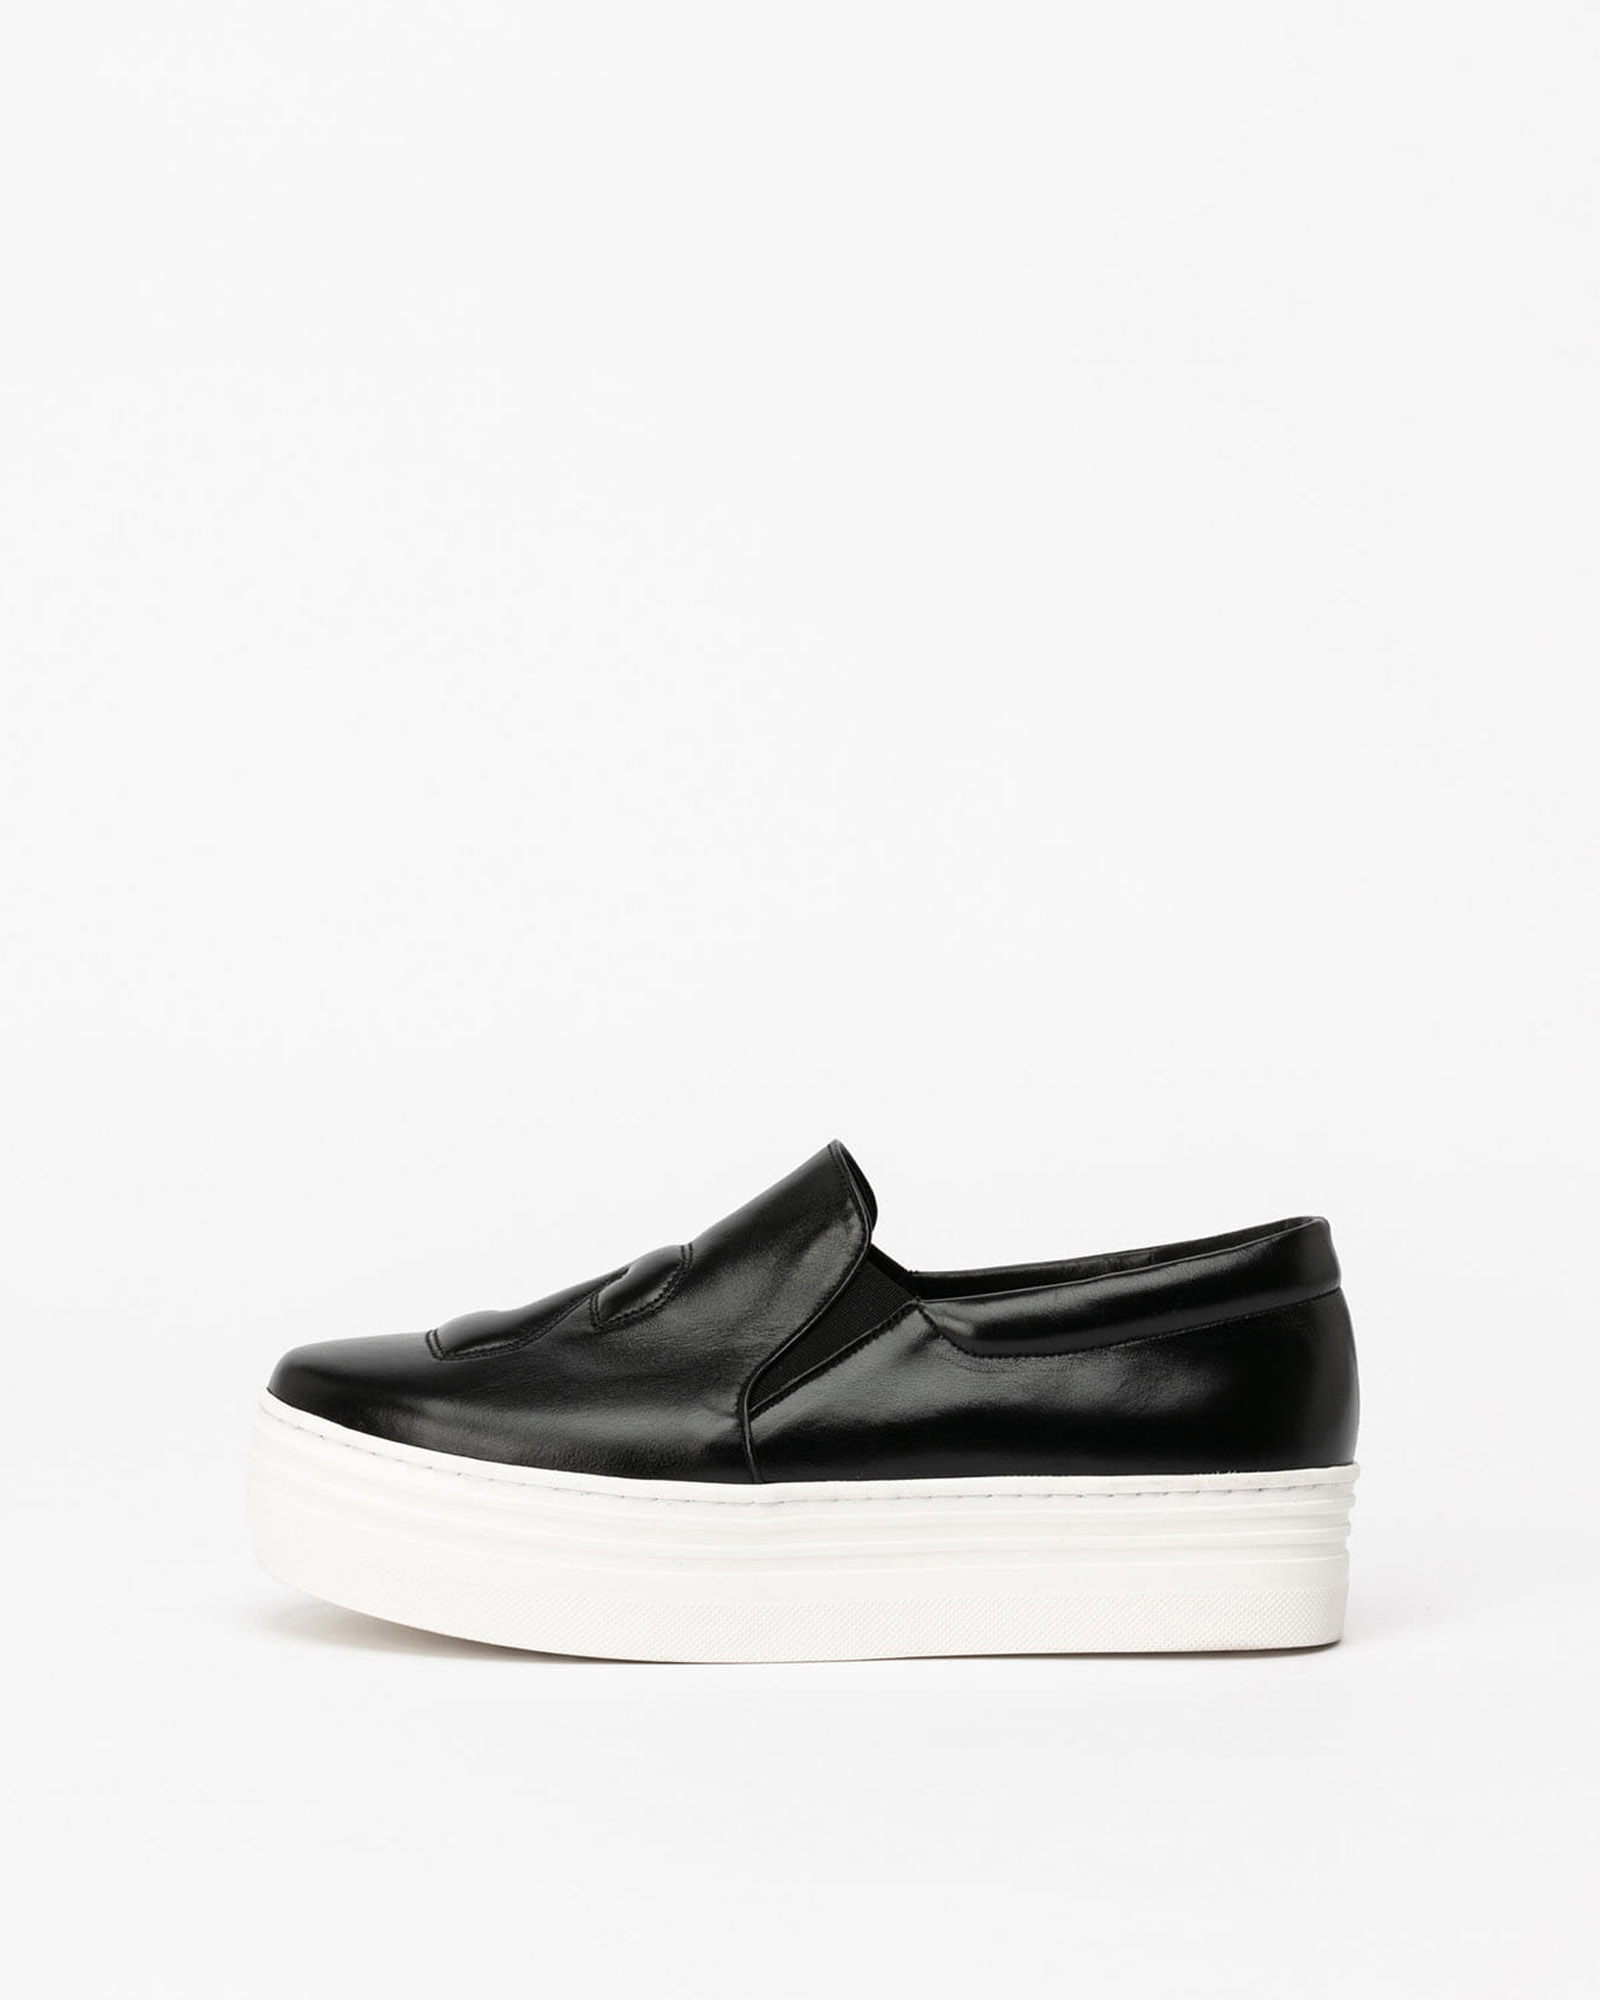 23 Slip-on Sneakers in Textured Black